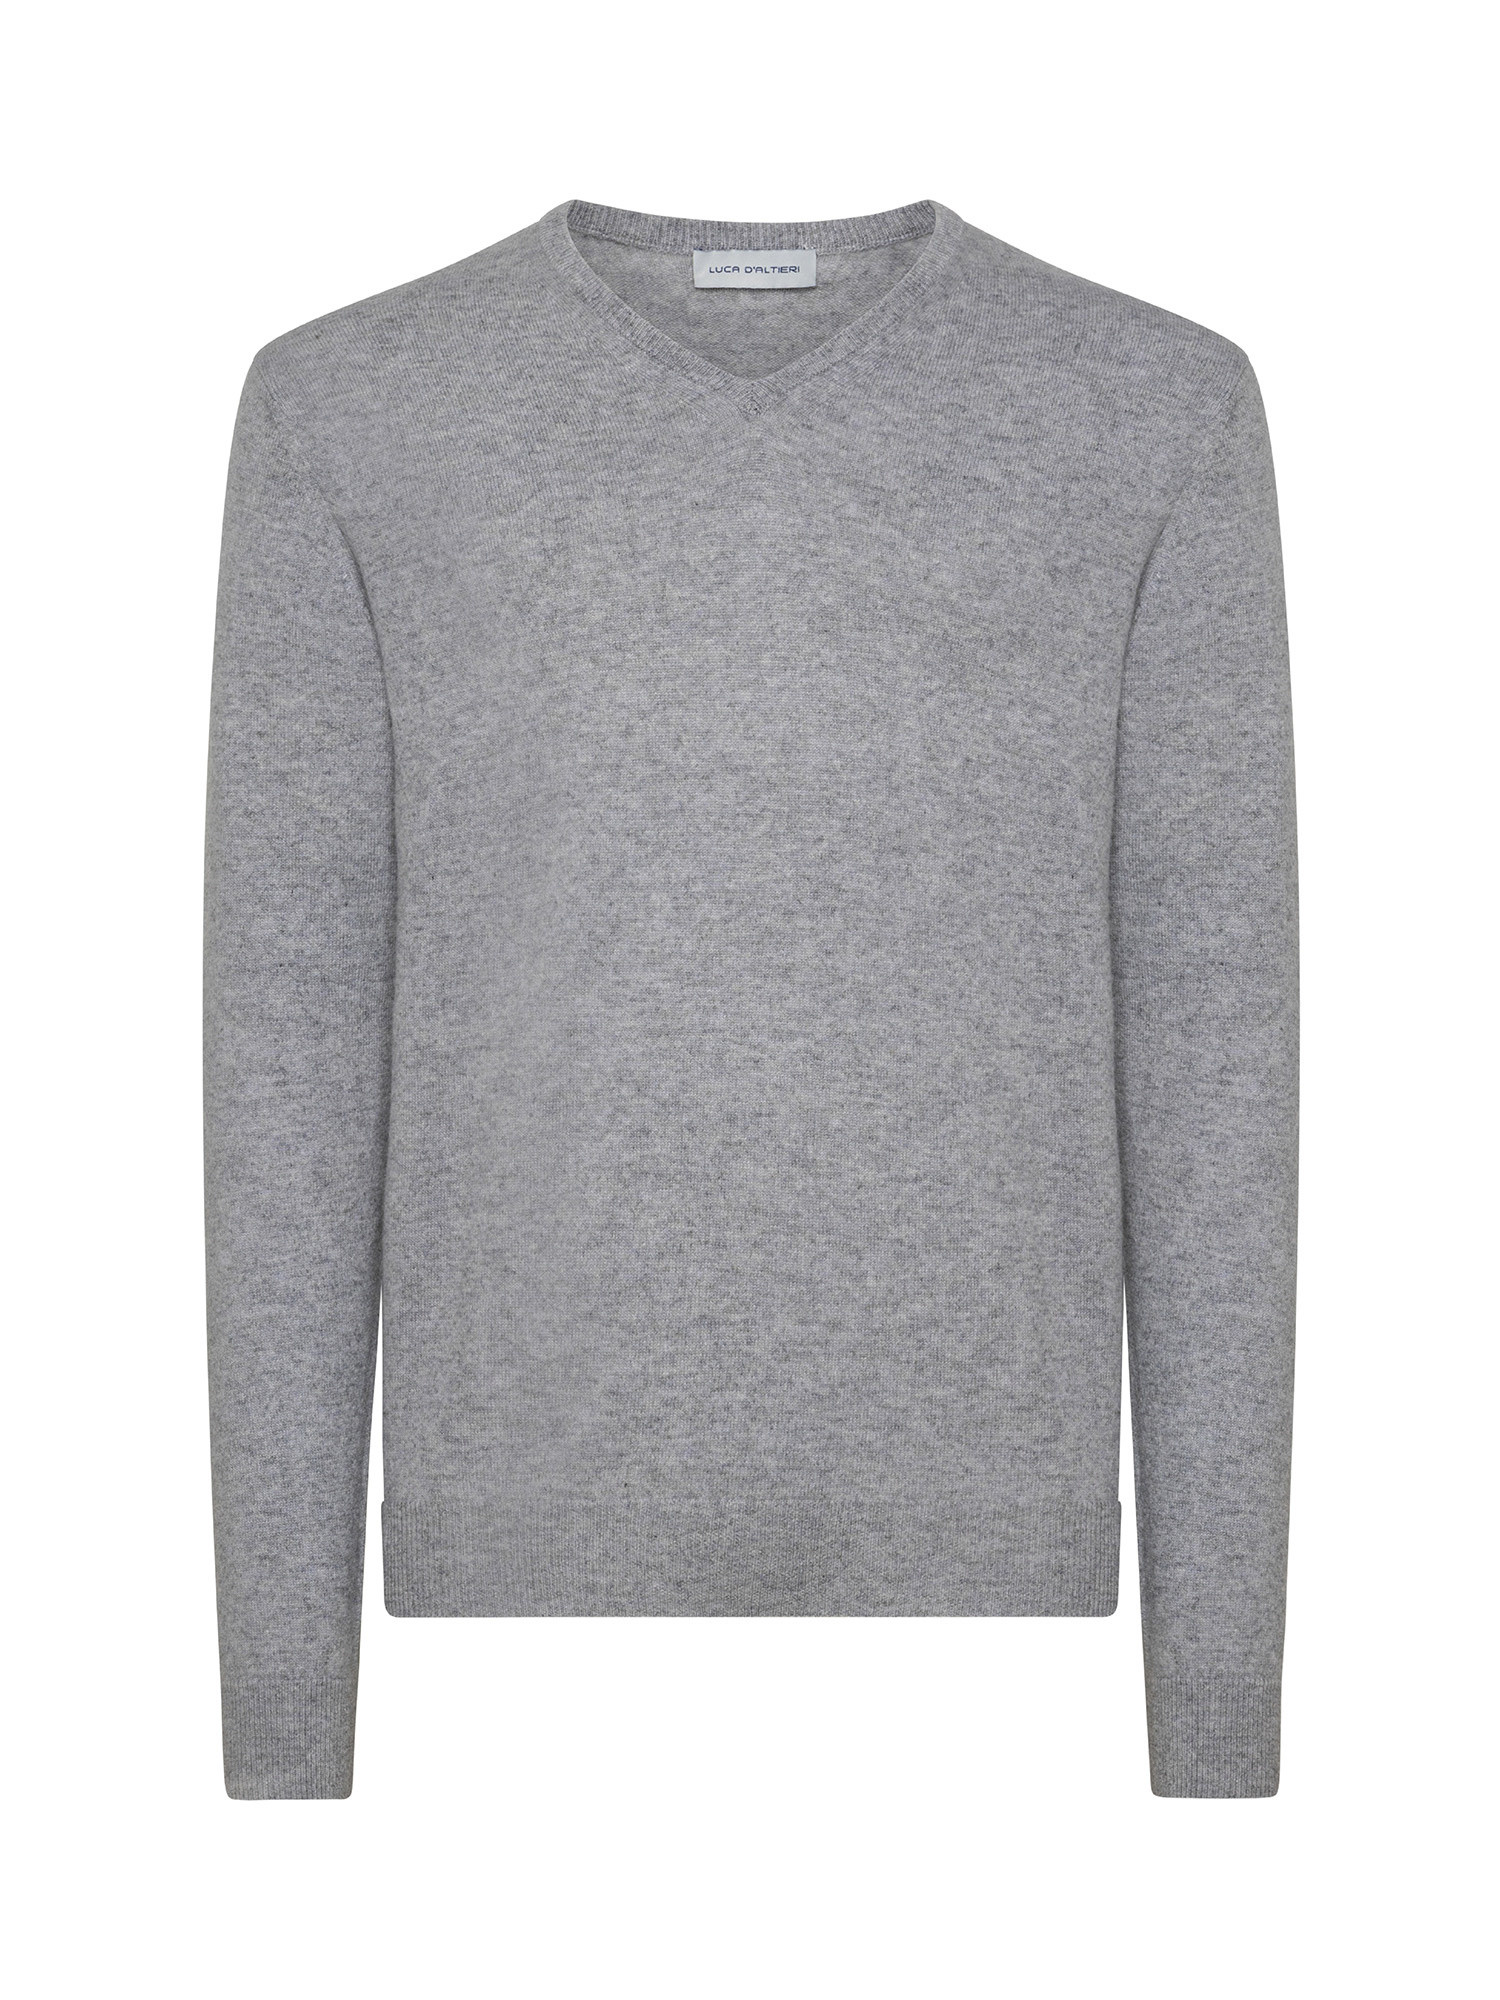 Пуловер с V-образным вырезом из чистого кашемира Luca D'Altieri, серый пуловер с v образным вырезом из трикотажа с начесом s черный